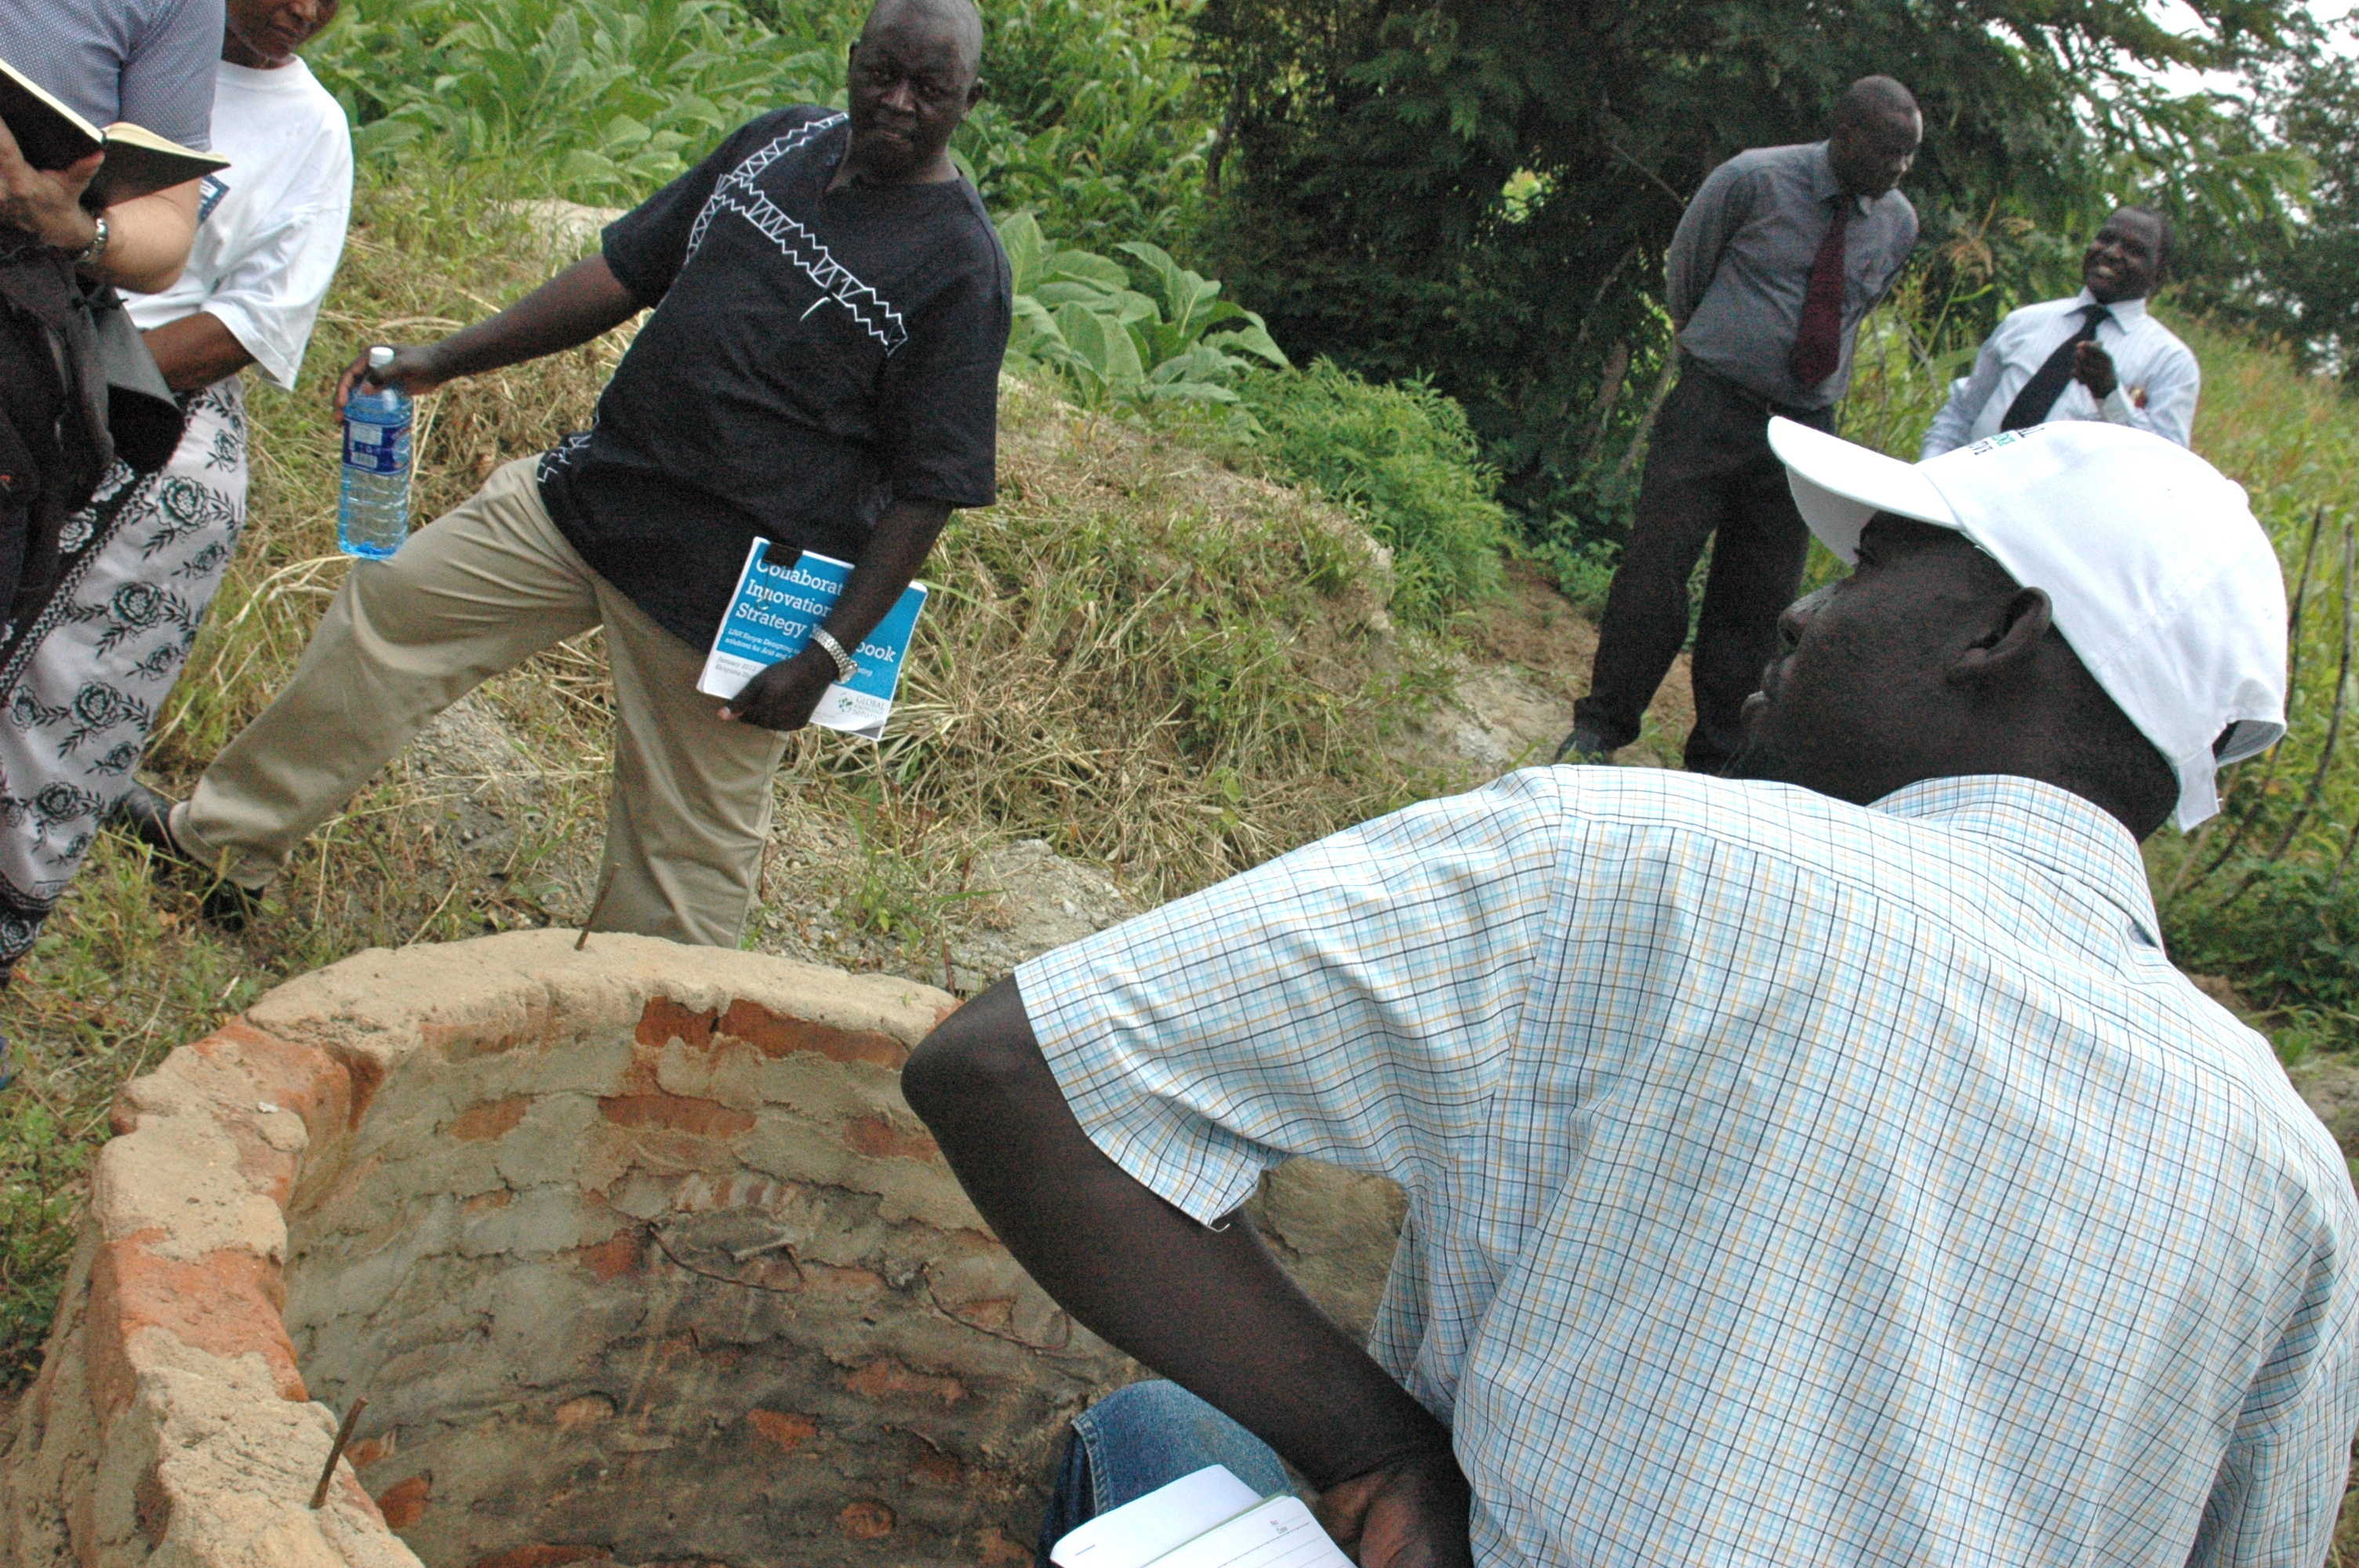 Round III of LINK focuses on rainwater harvesting technologies - like this well - in Kenya